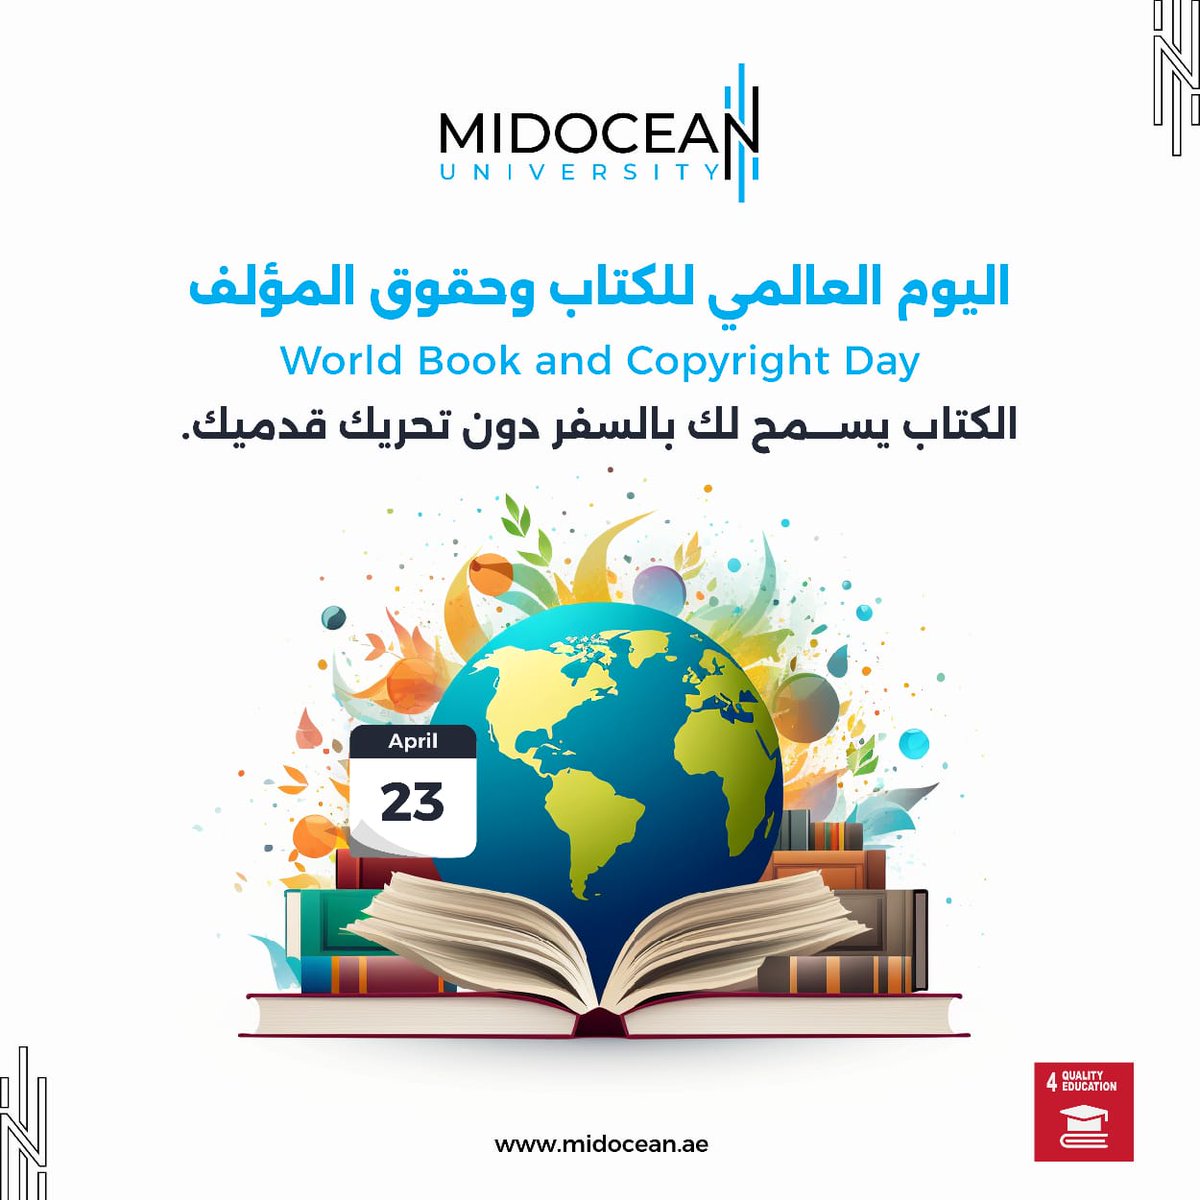 #جامعة_ميدأوشن 
#MidoceanUniversity